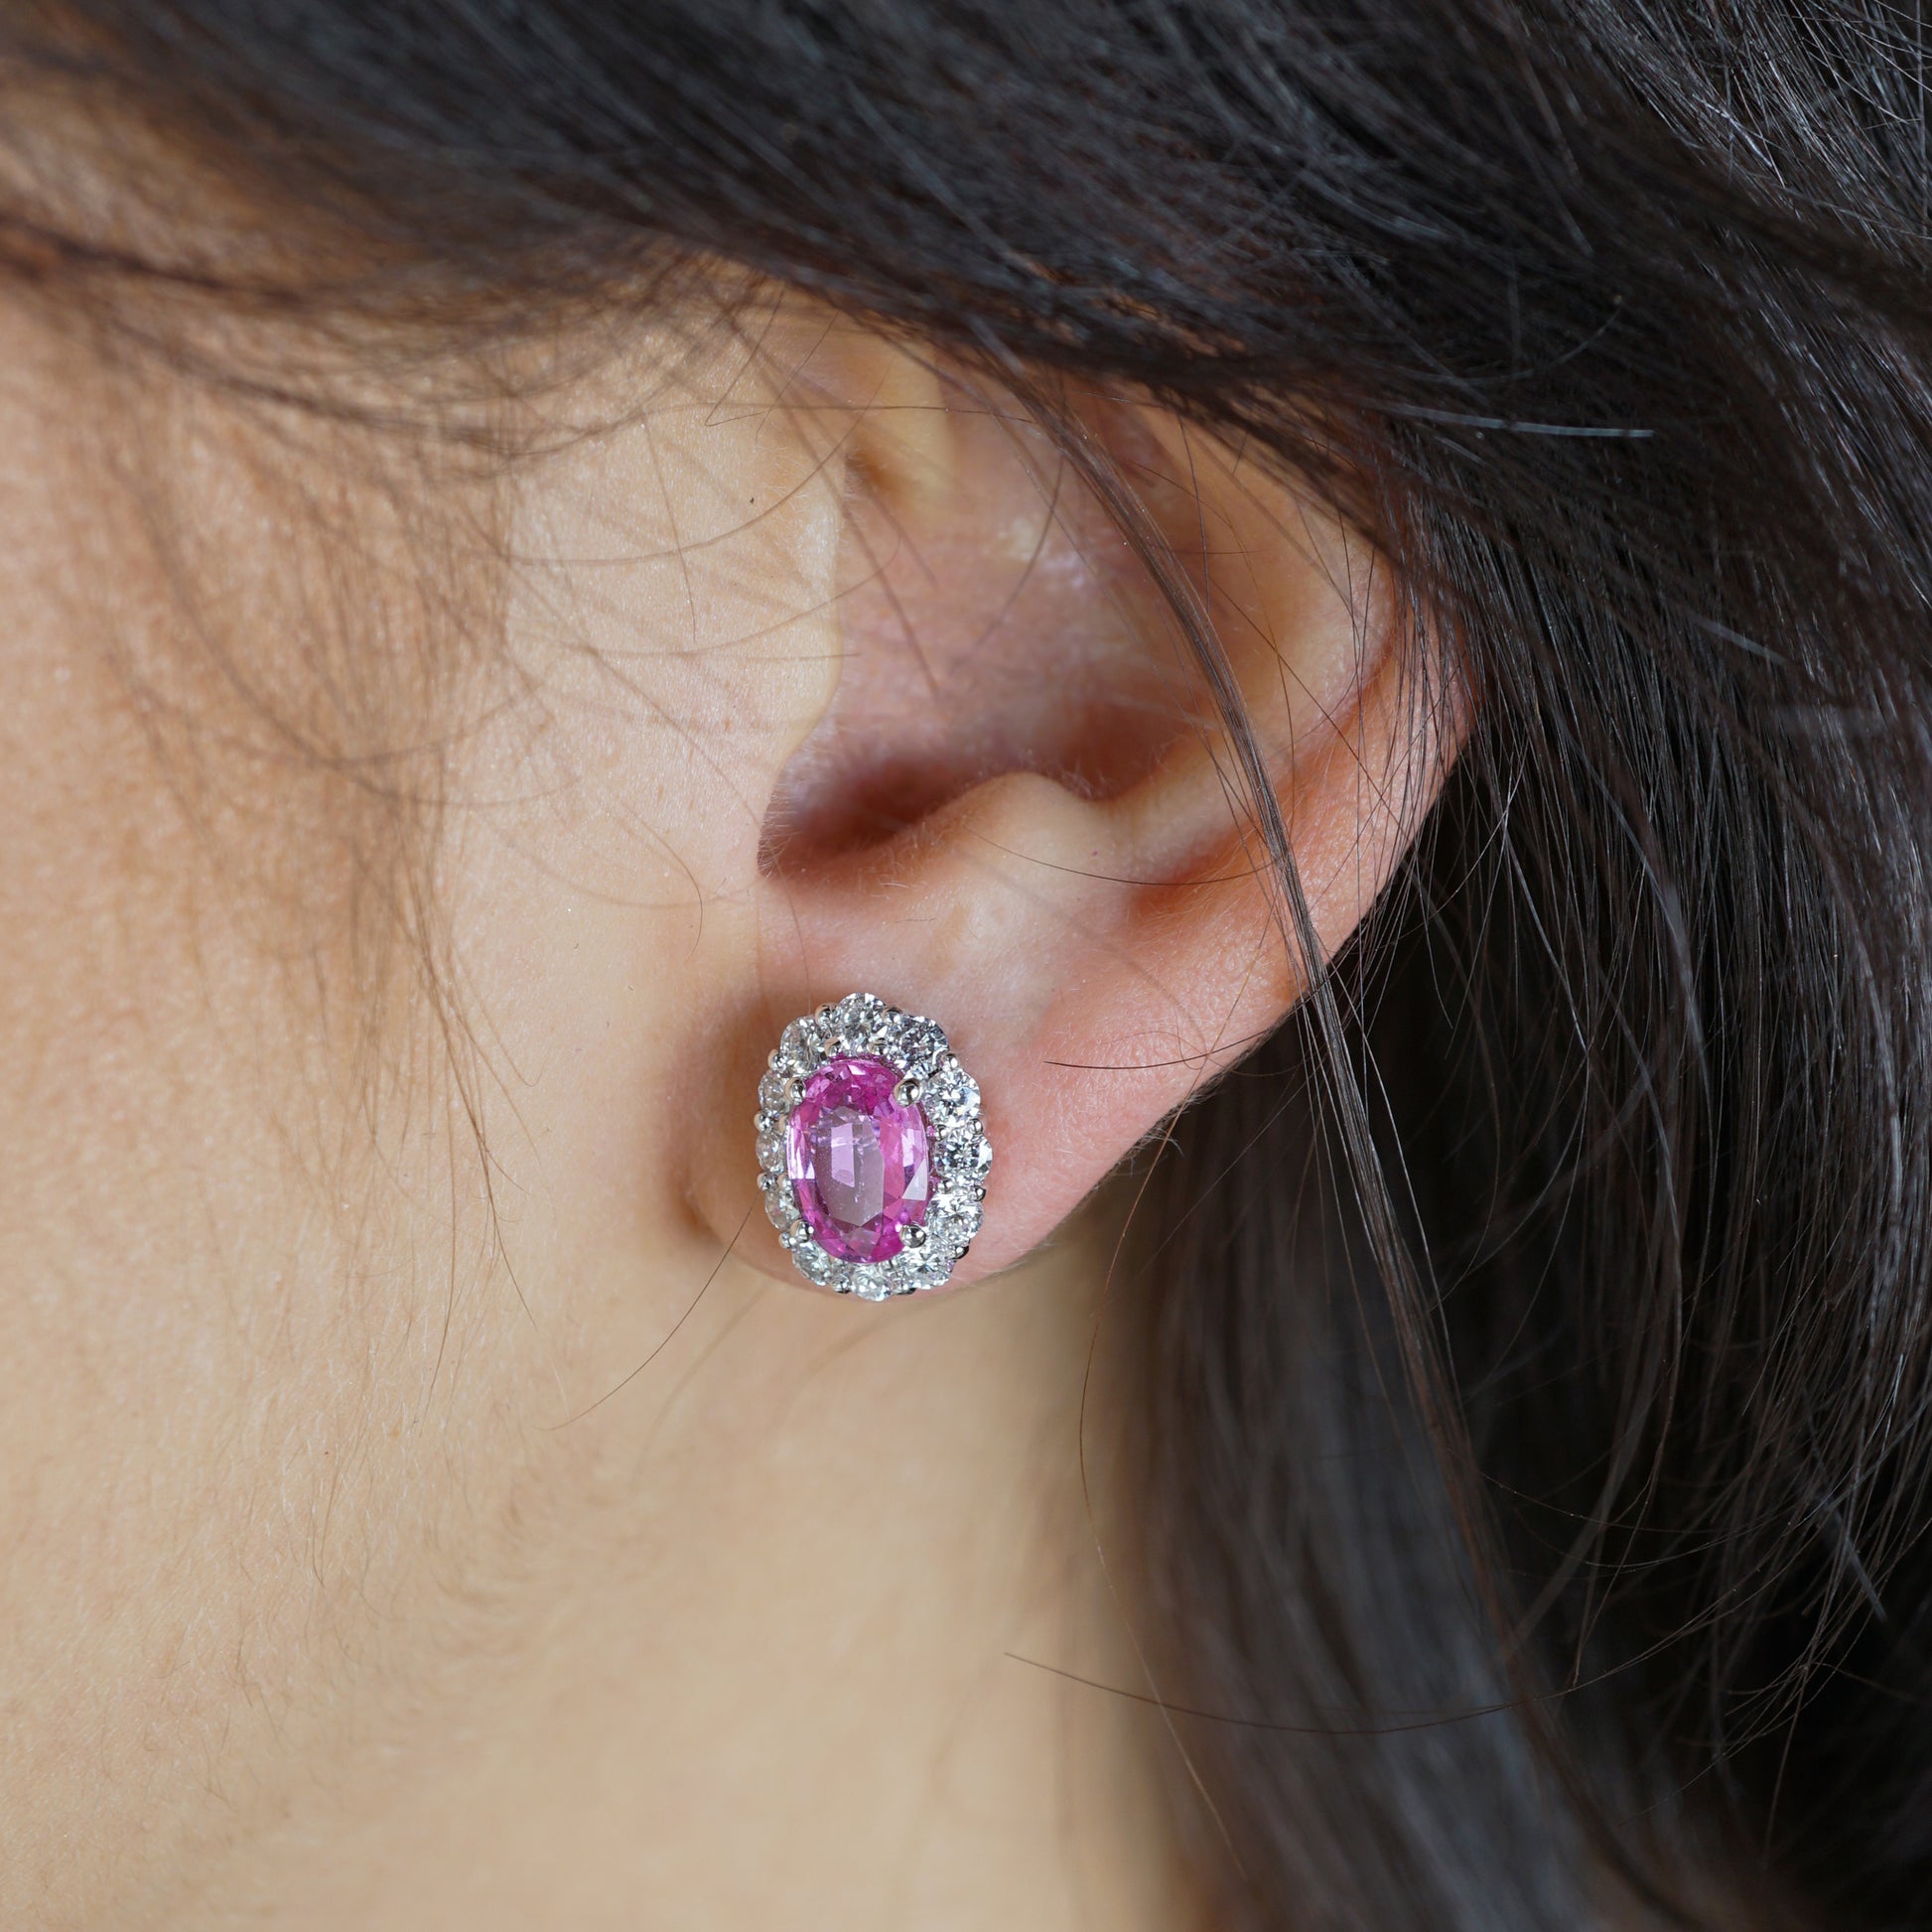 3.60 Oval Cut Pink Sapphire & Diamond Earrings in 18K White Gold